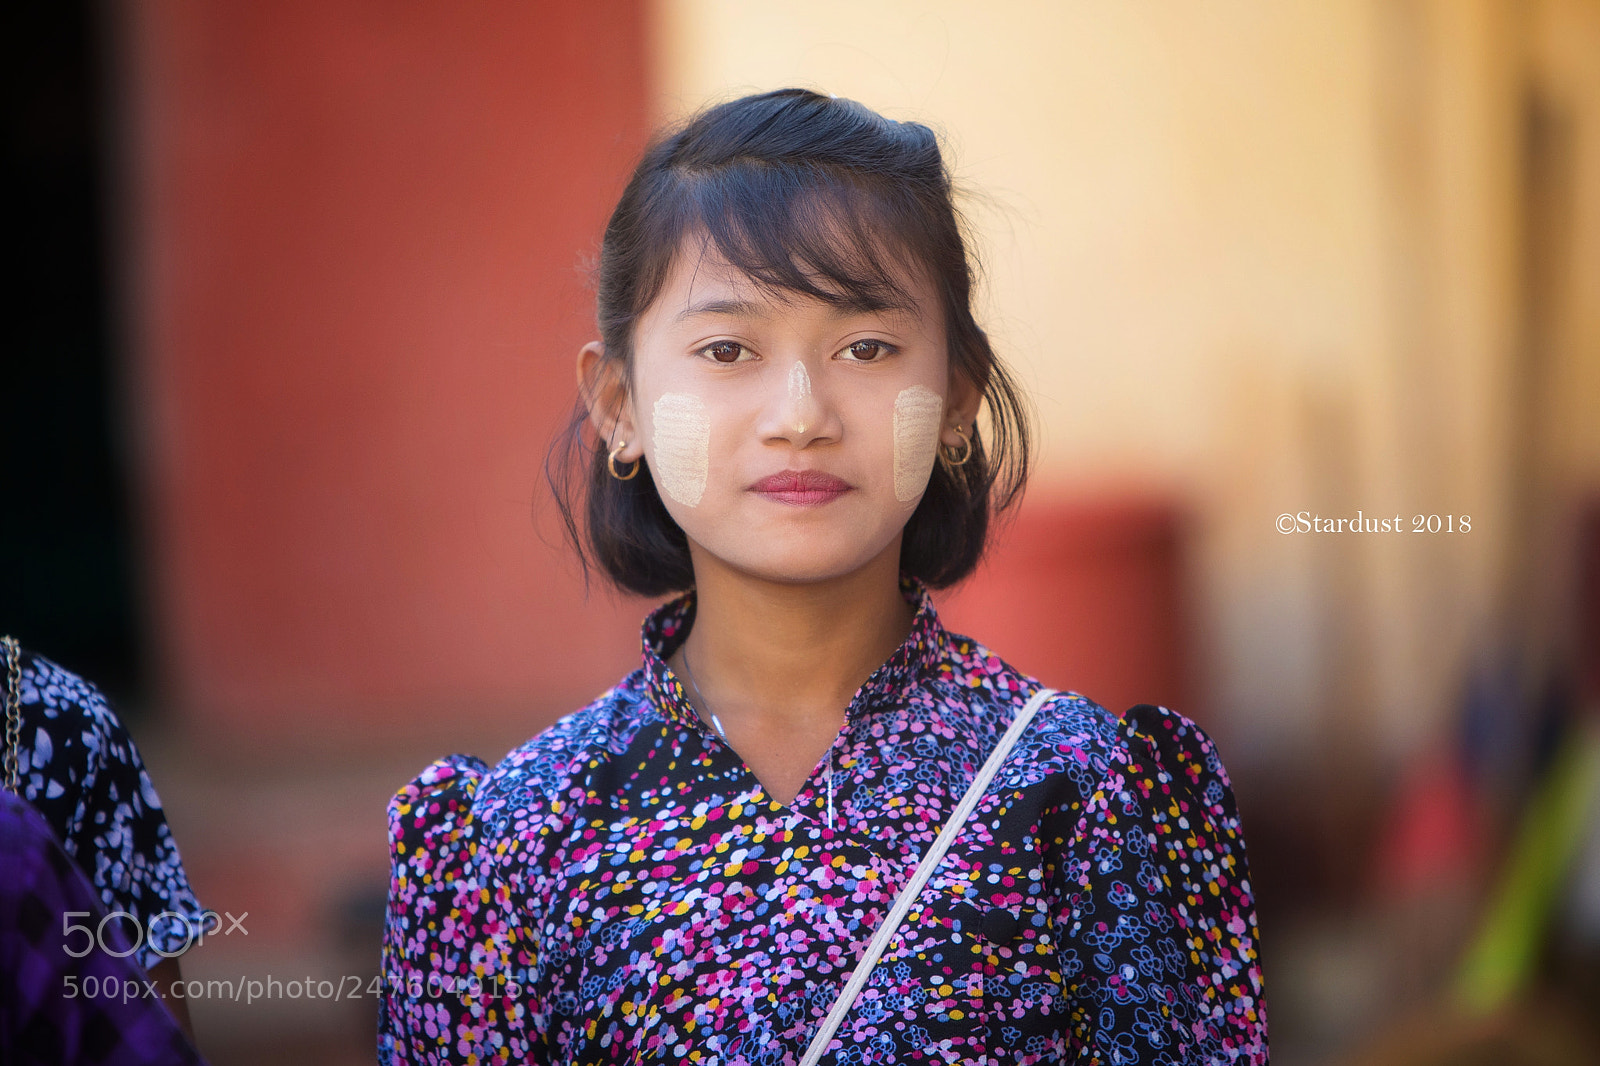 Canon EOS 5D Mark IV sample photo. Burmese girl photography